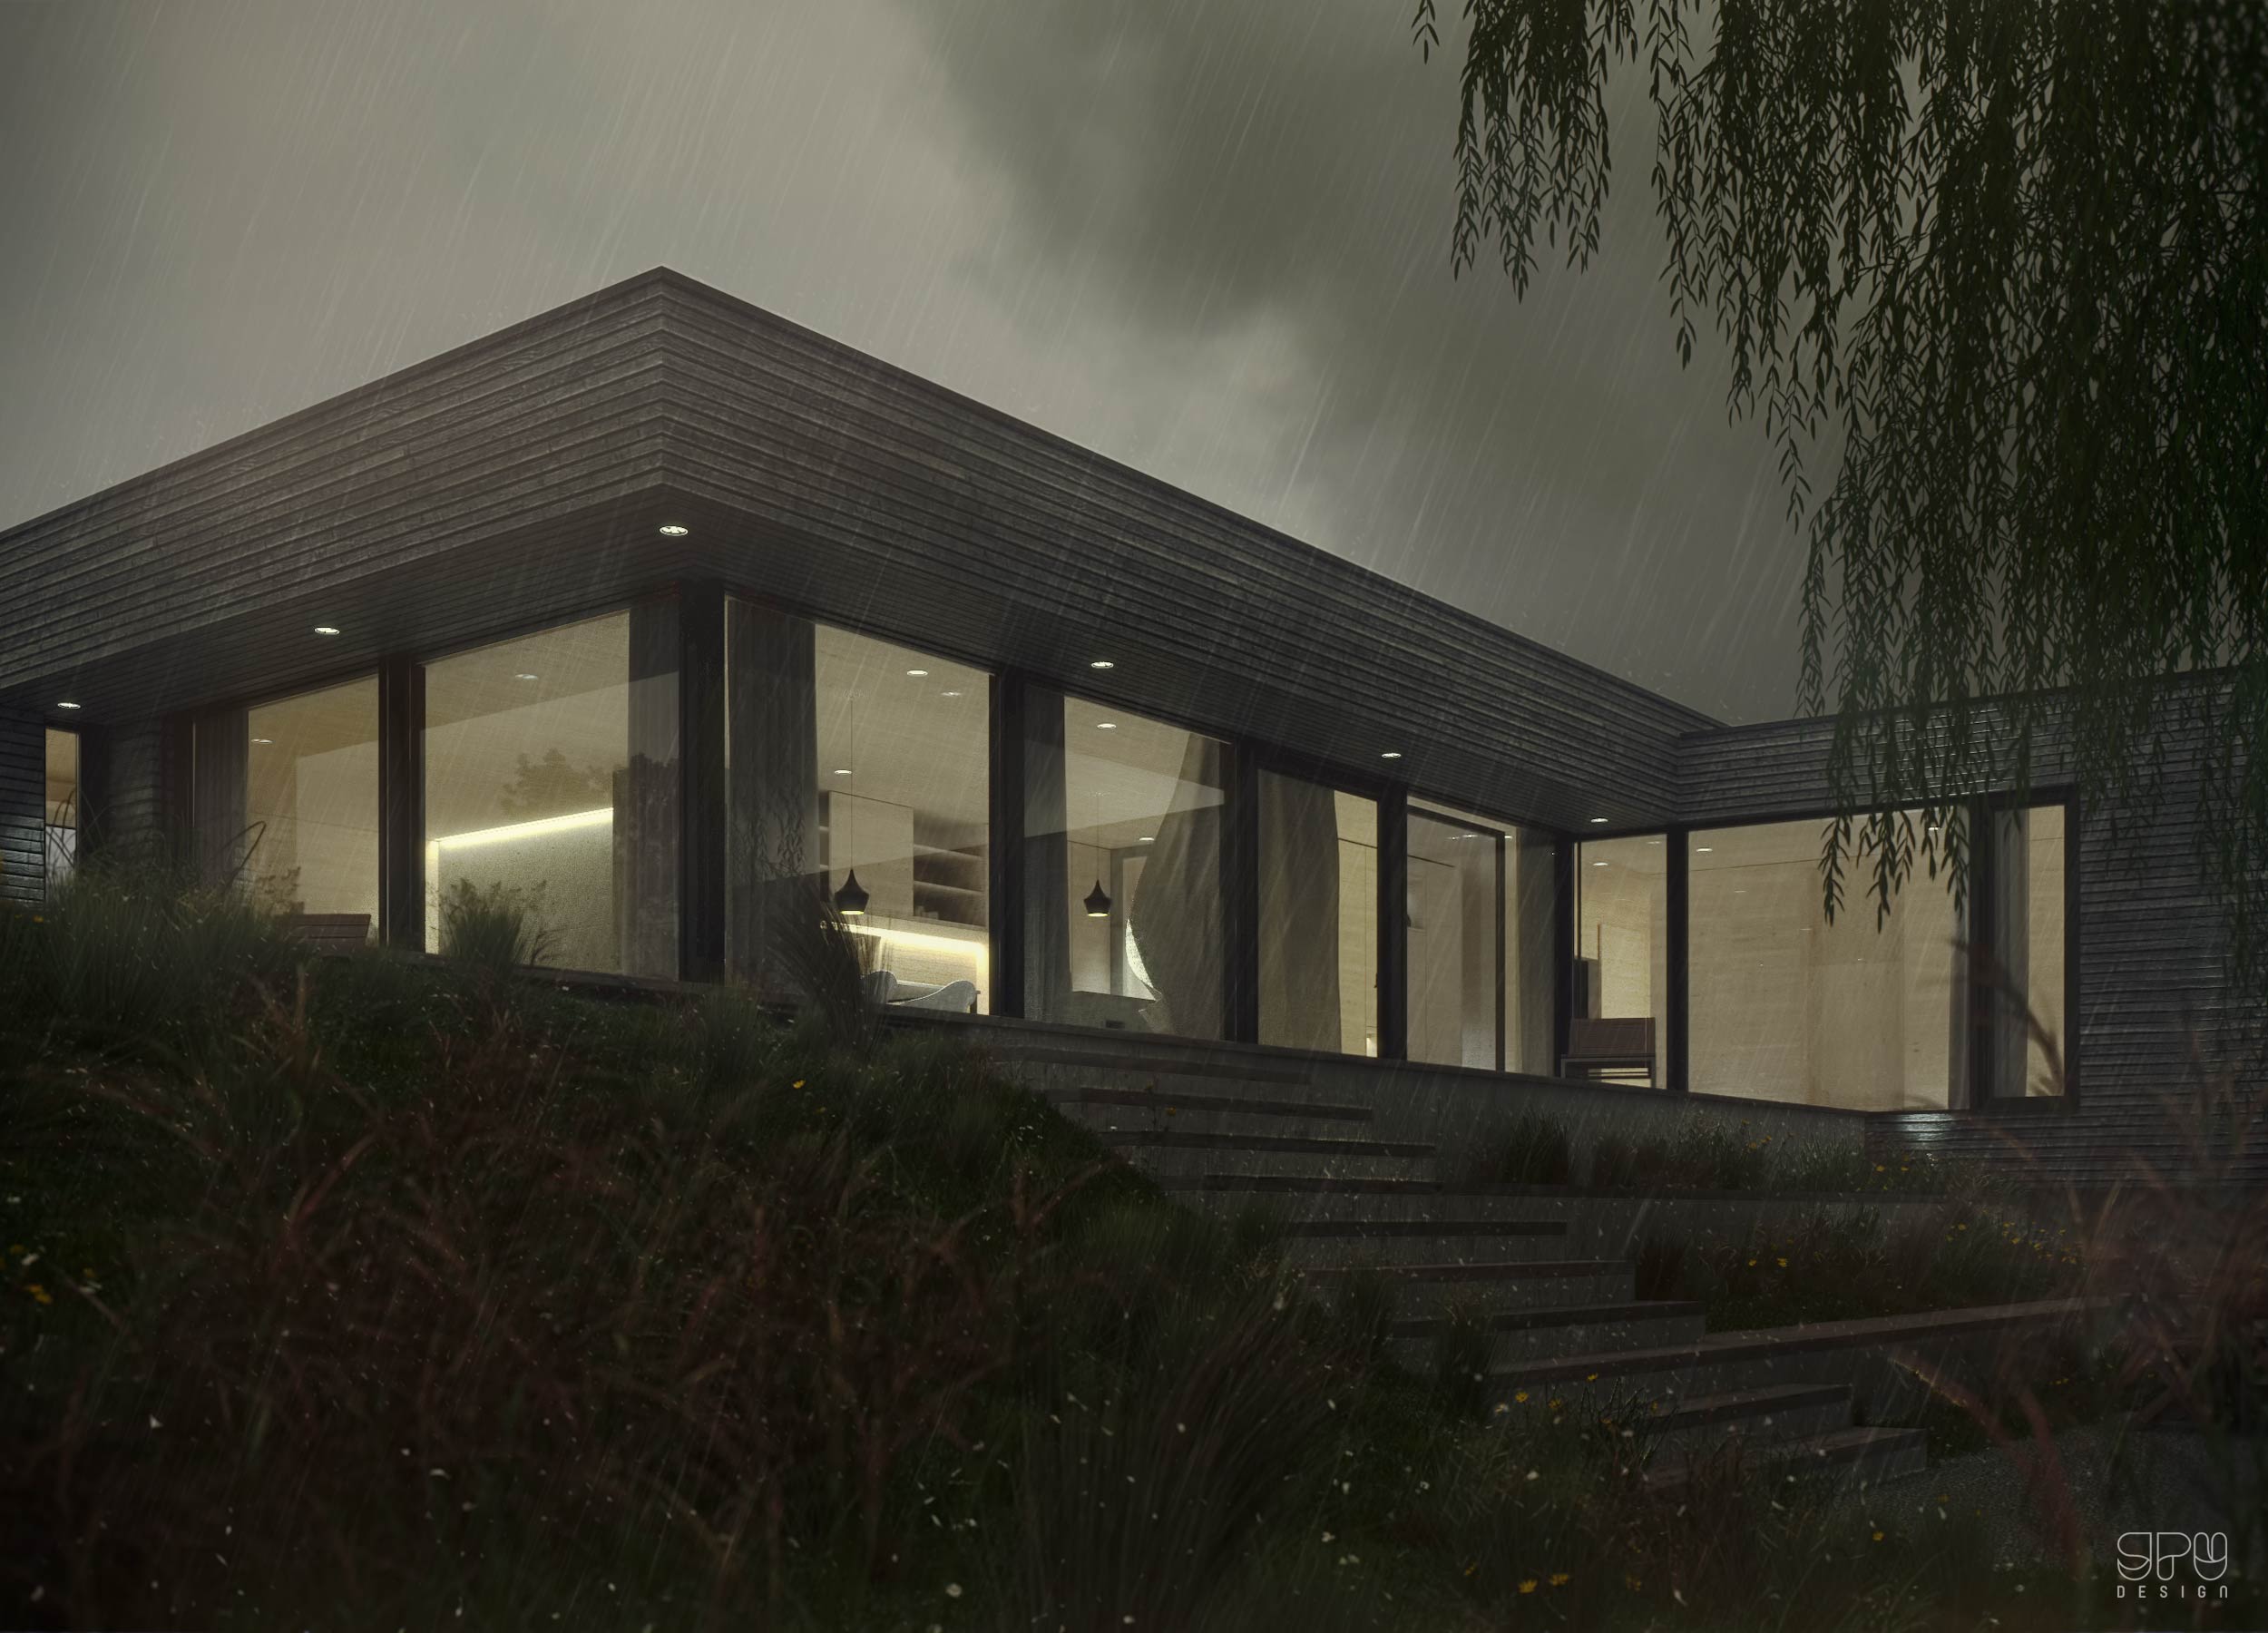 House Mosborn architectural visualization GPU Design